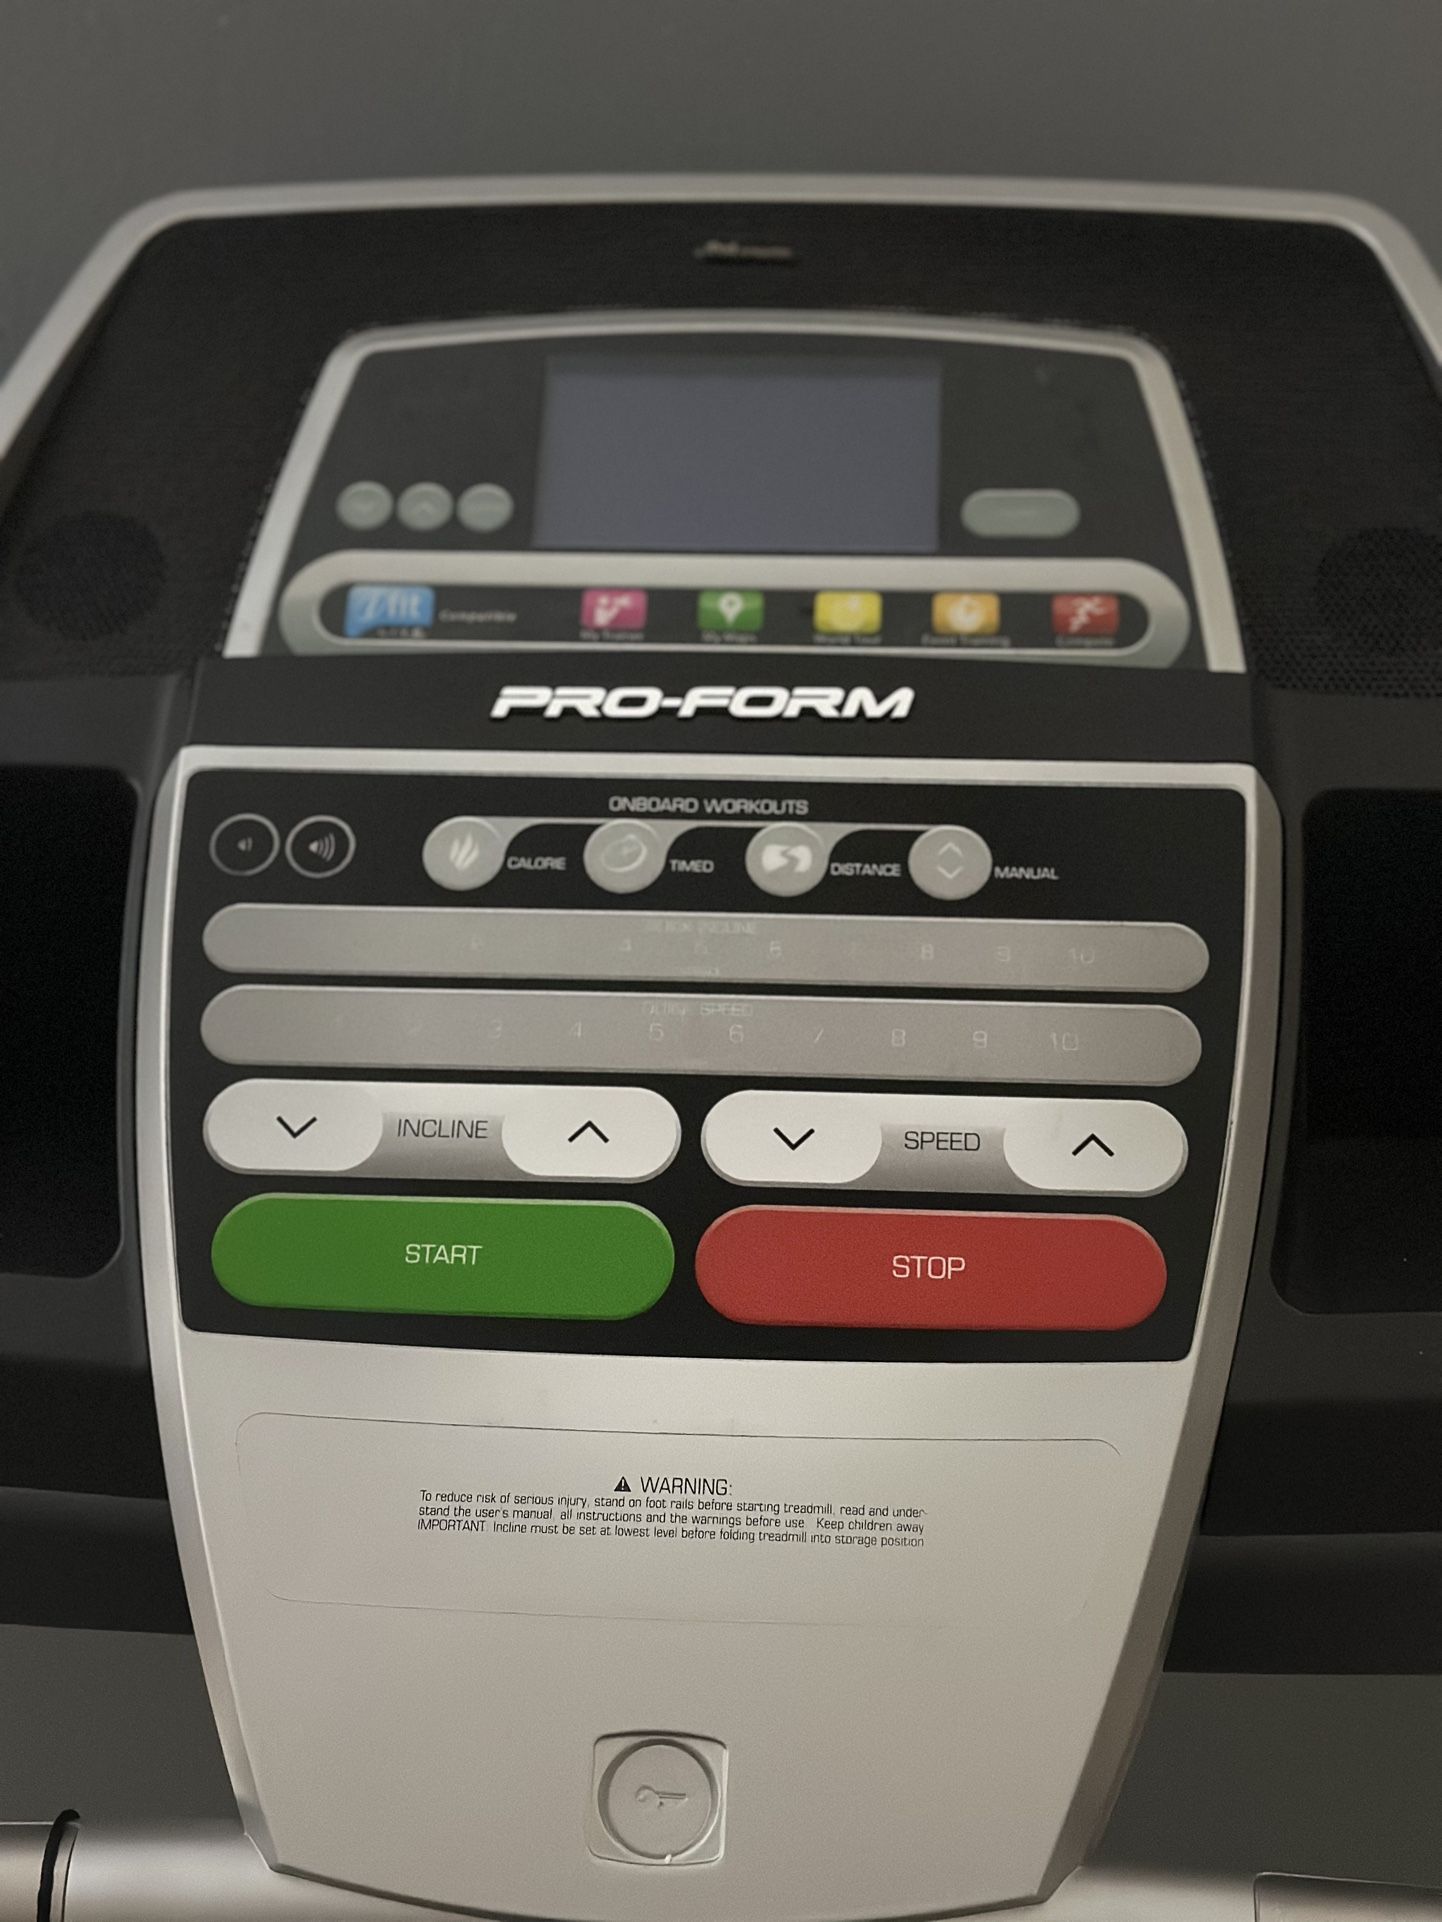 Pro-Form - Treadmill